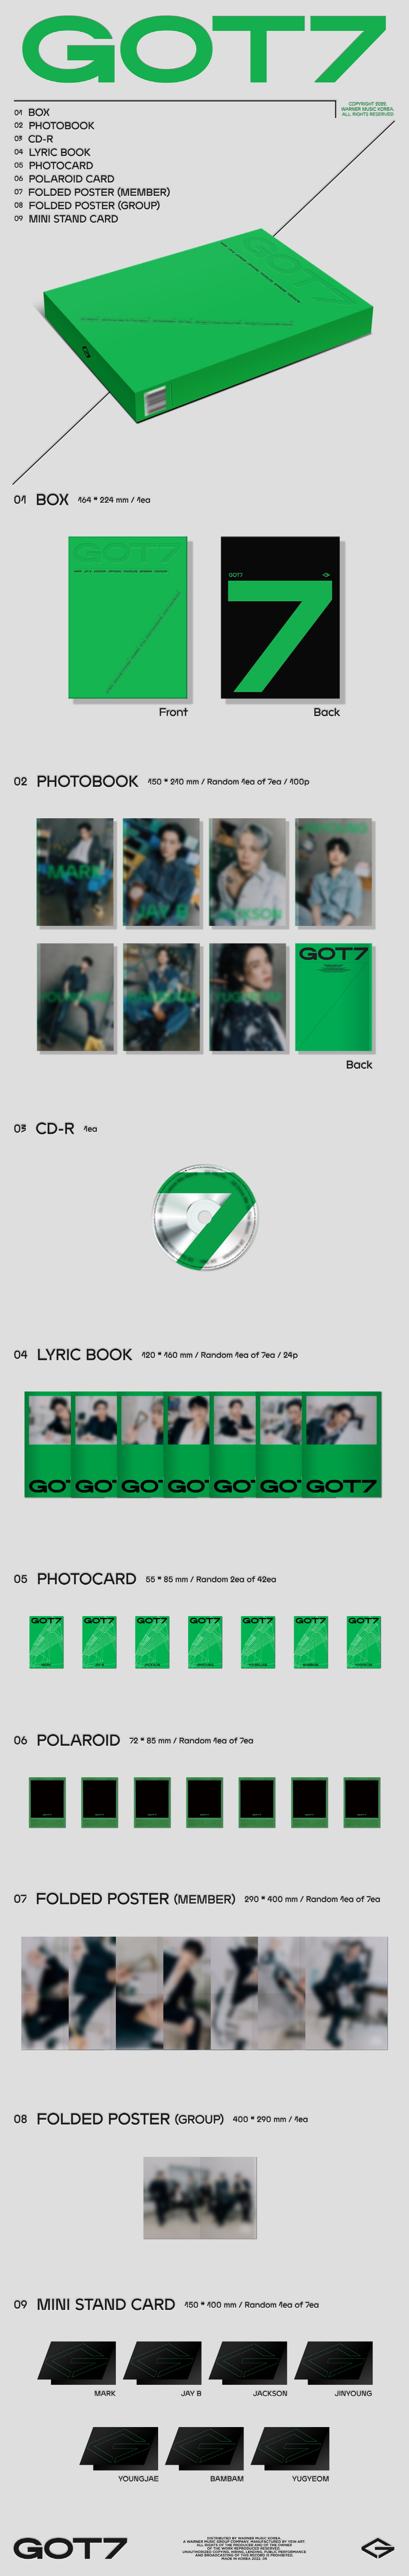 GOT7 - GOT7 (7 Types SET) ( 12th Mini Album ) got7 got7album IGOT7 GOT7isOurName GOT7comeback